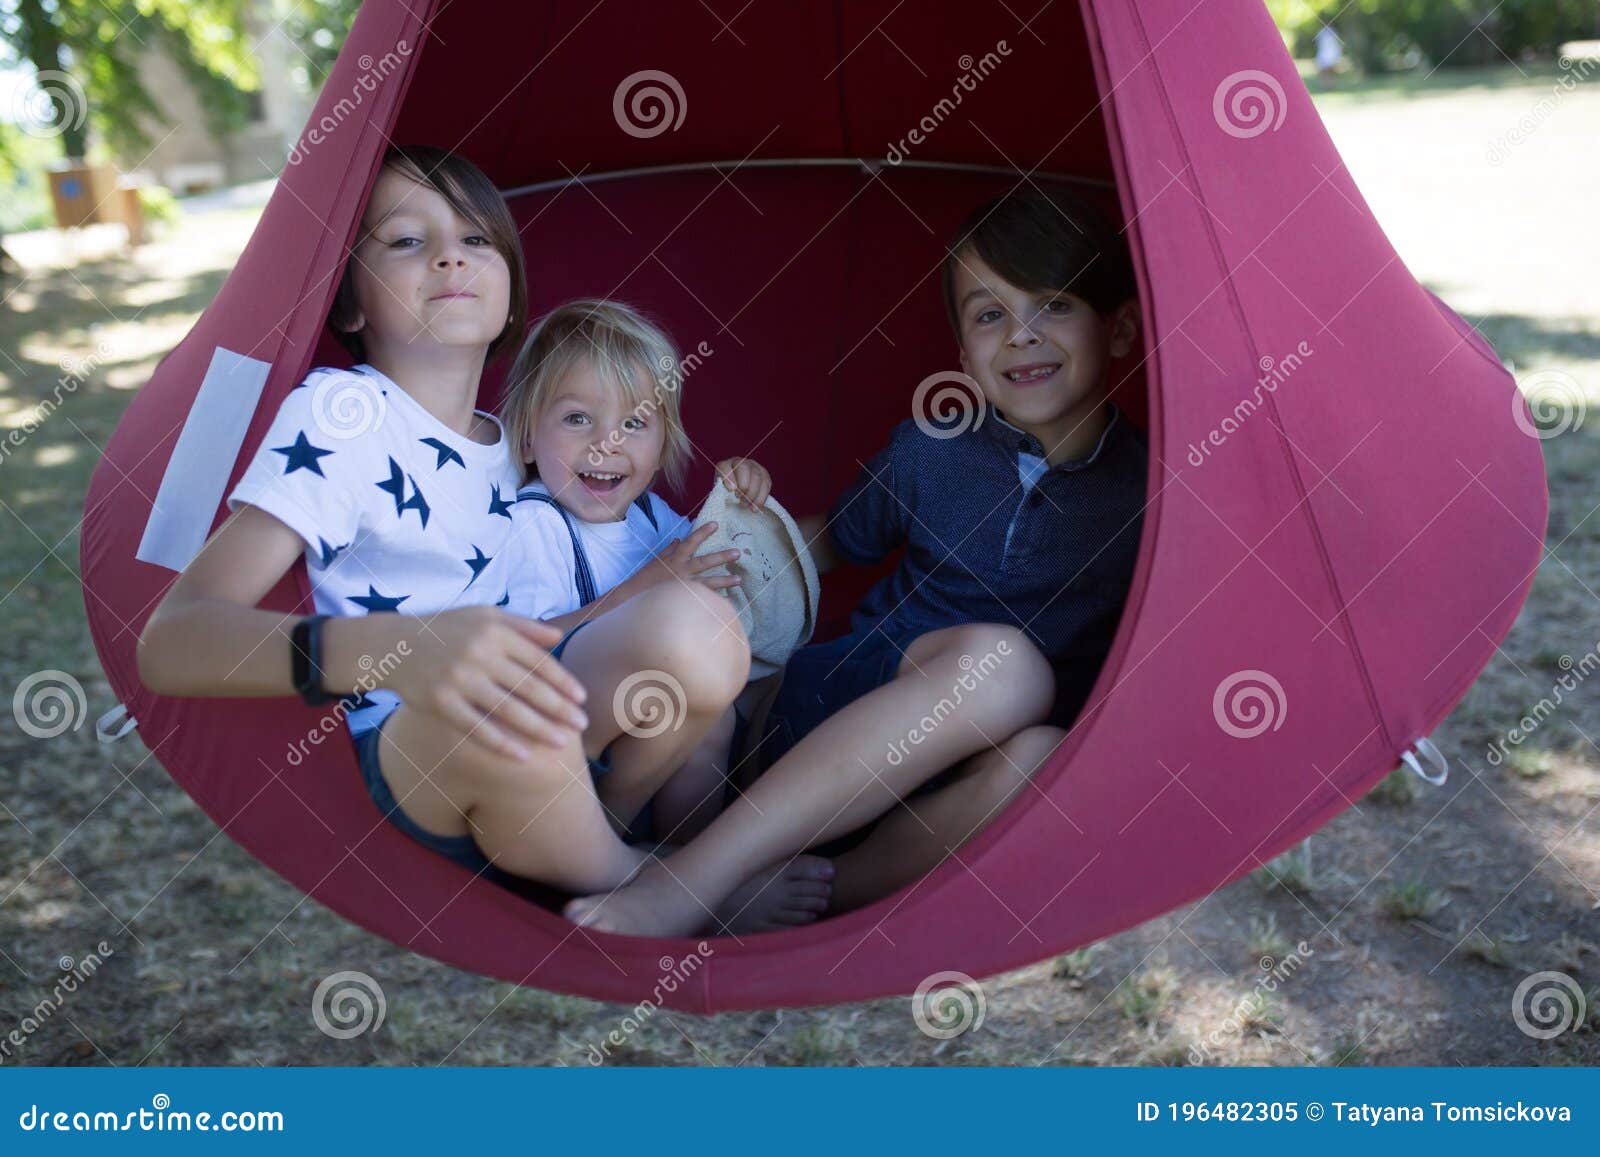 three children, boys swinging in a big cloth swing in a park